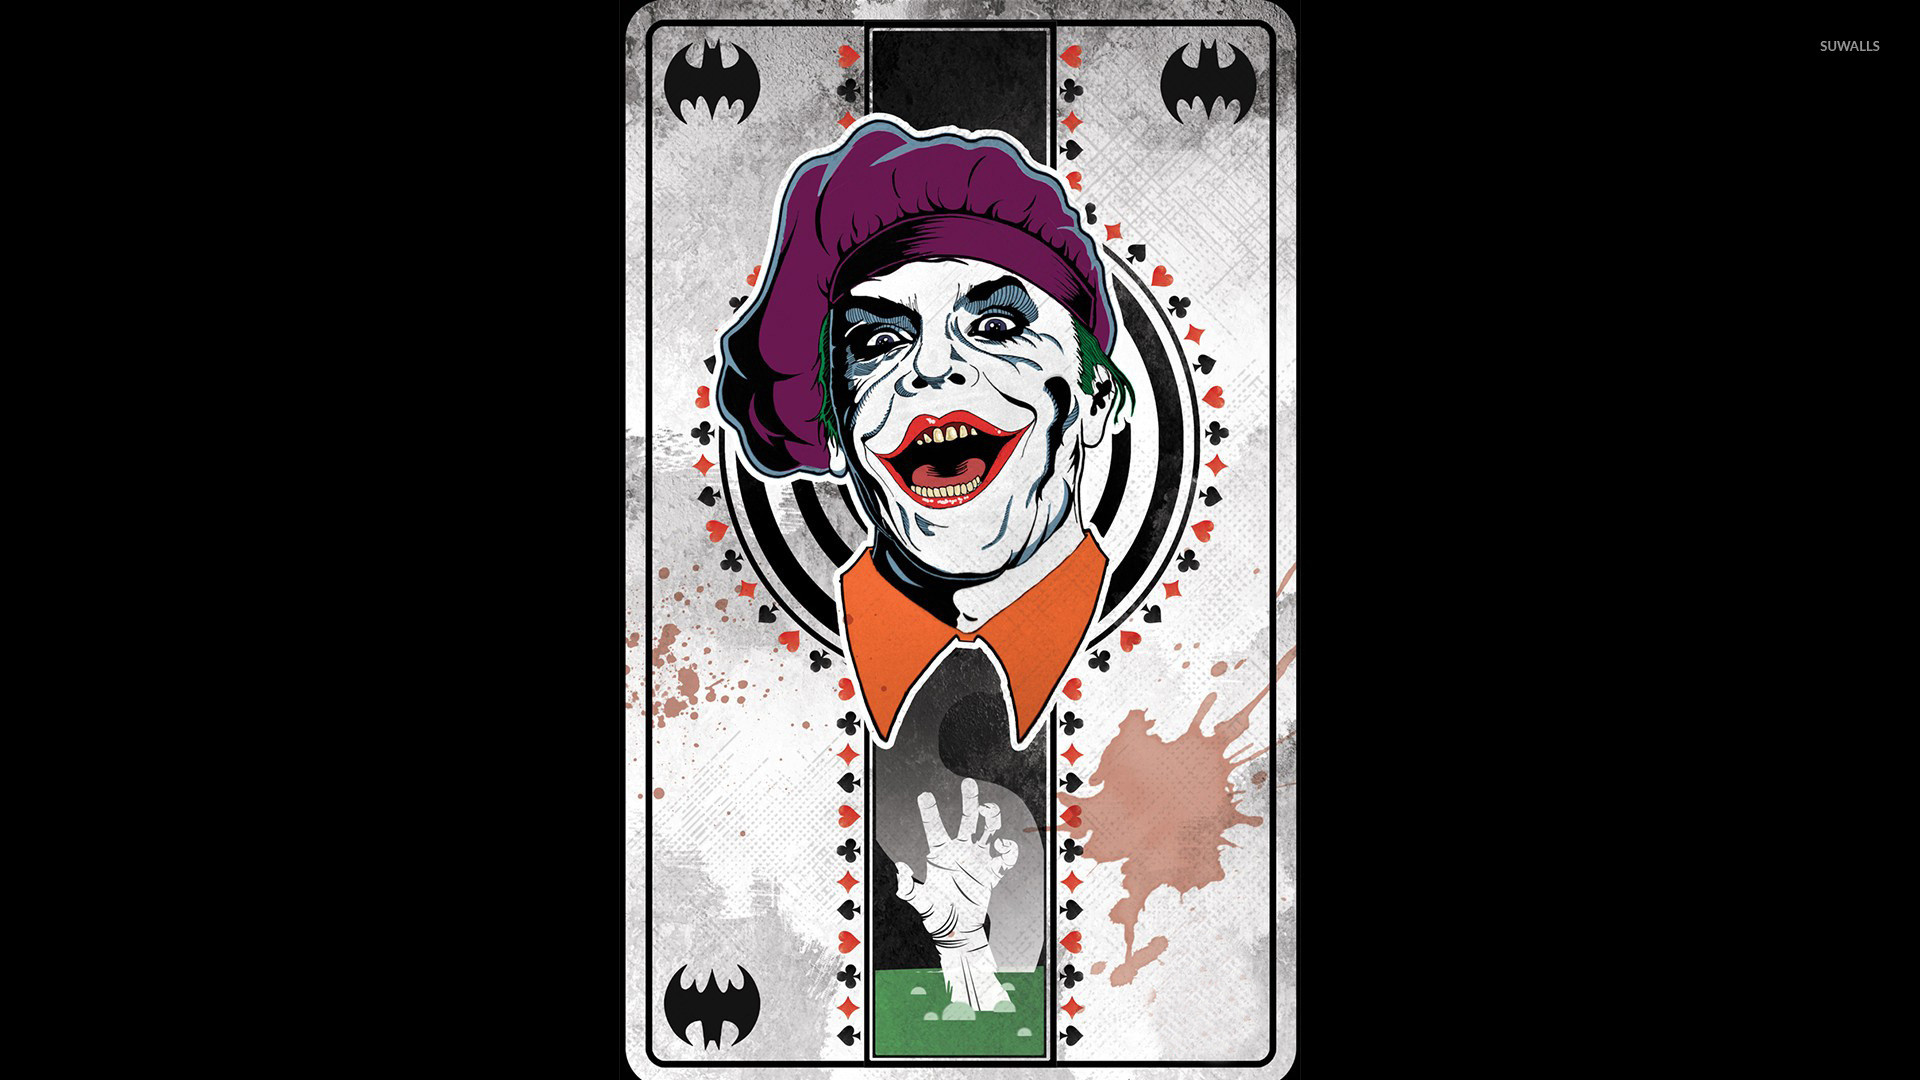 1920x1080 Joker card wallpaper